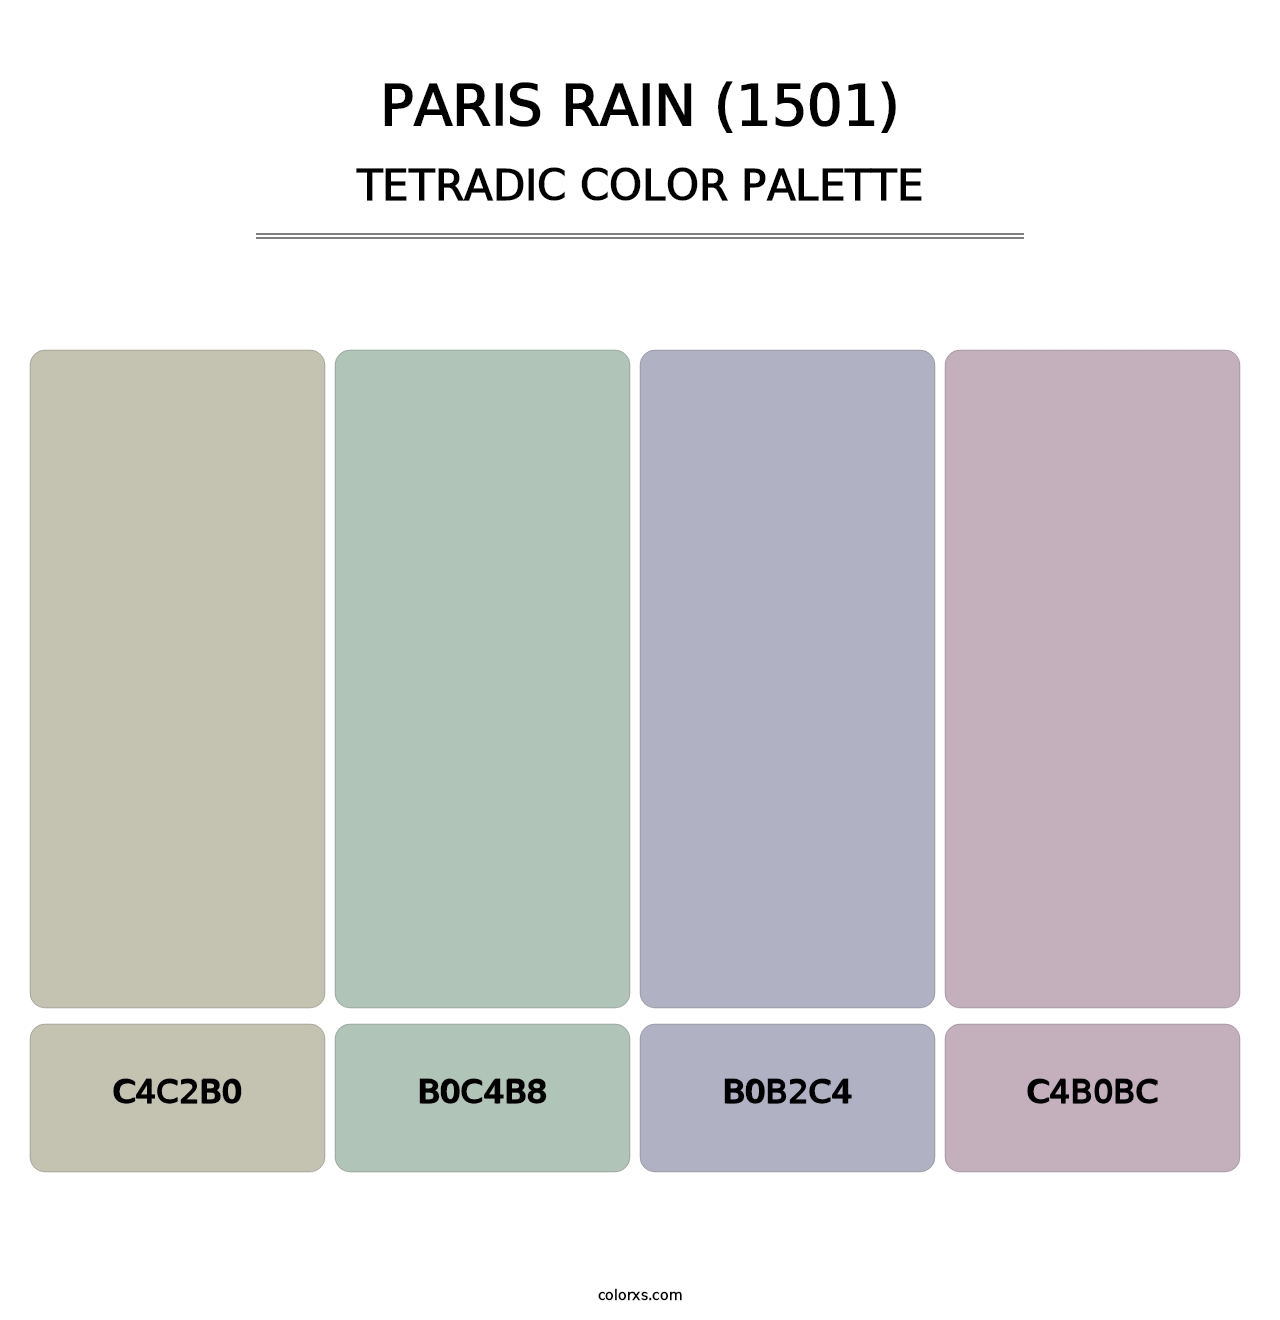 Paris Rain (1501) - Tetradic Color Palette